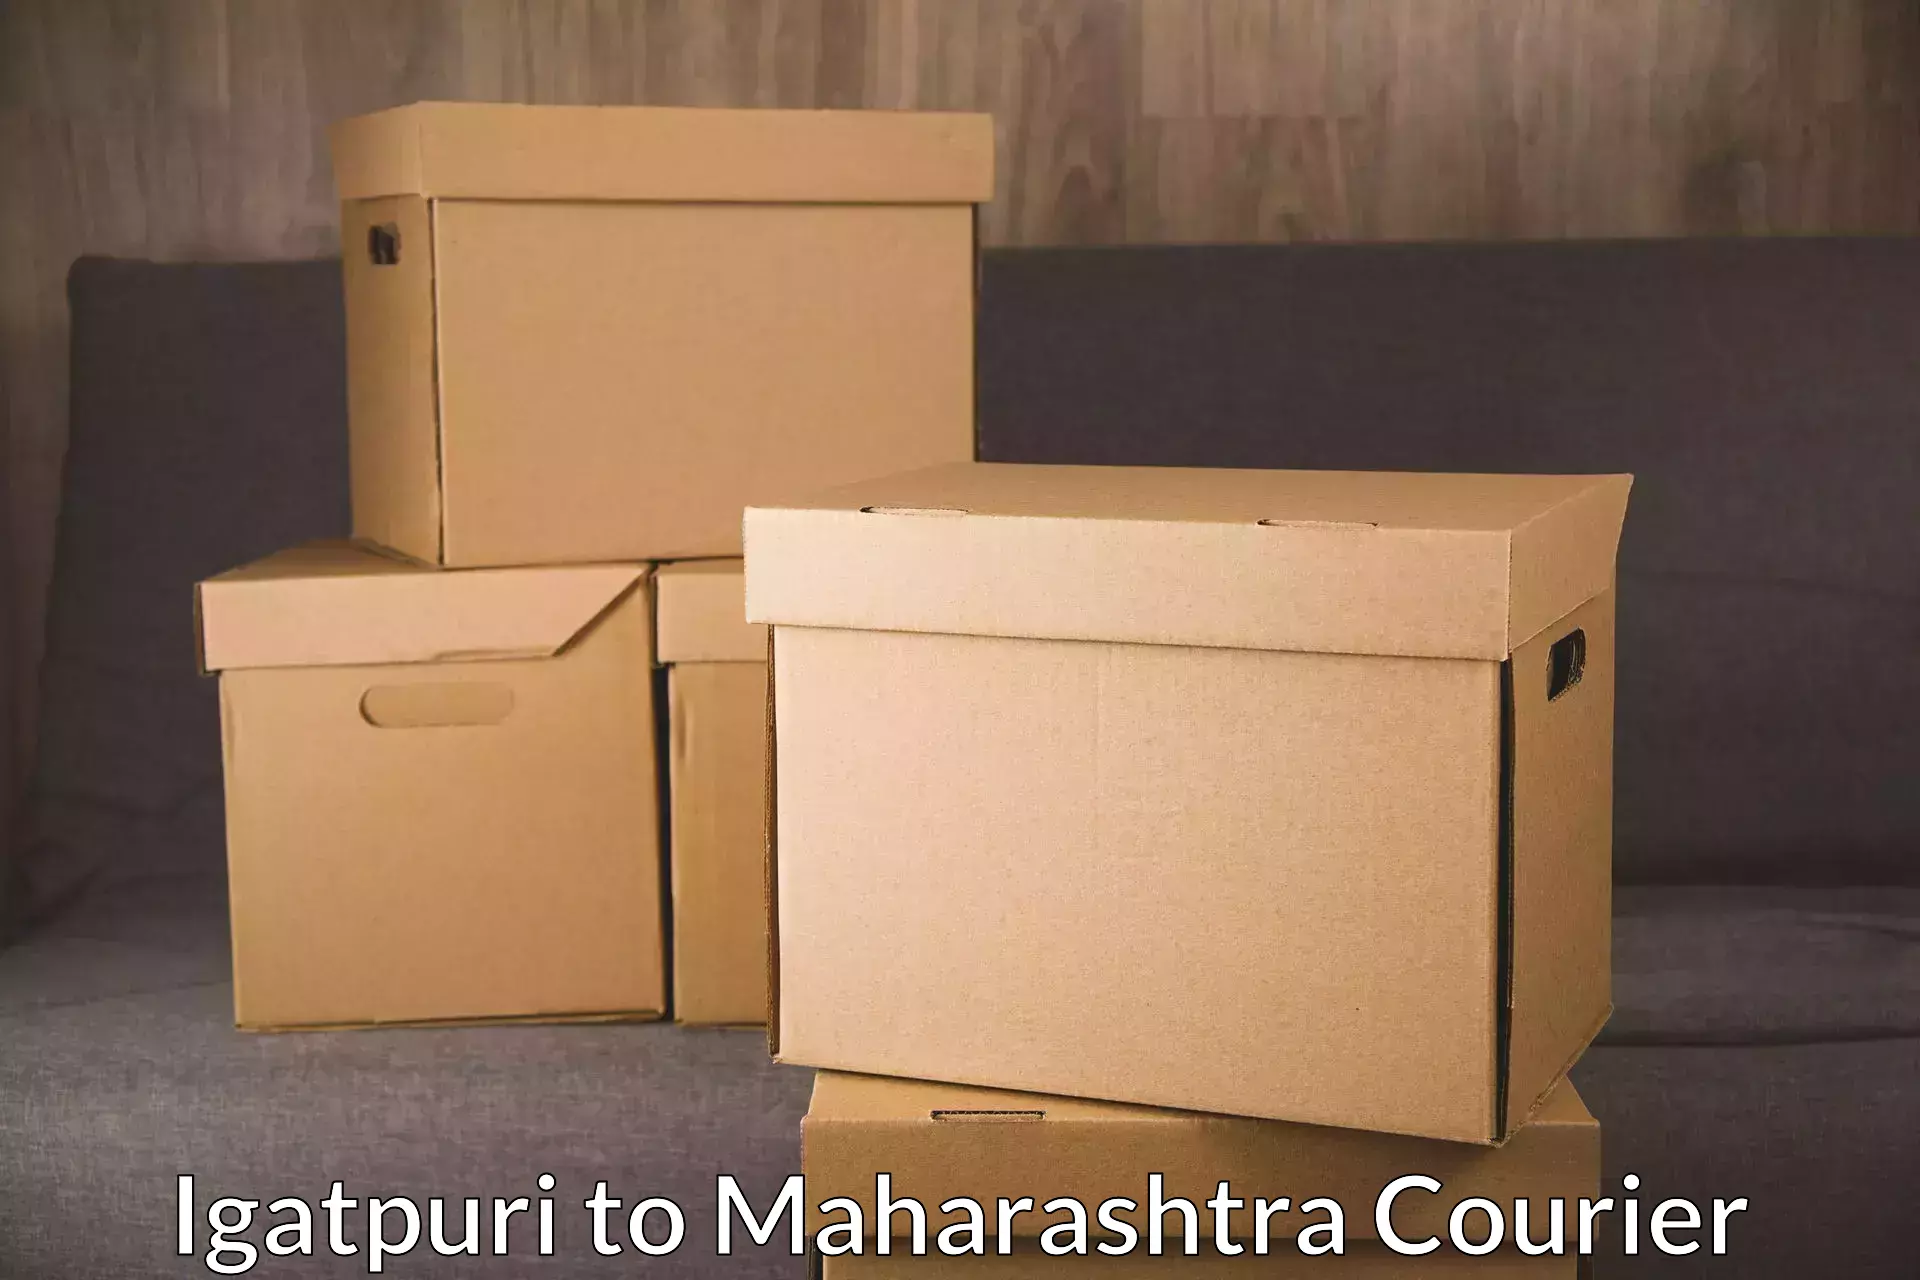 Professional courier services Igatpuri to Tata Institute of Social Sciences Mumbai